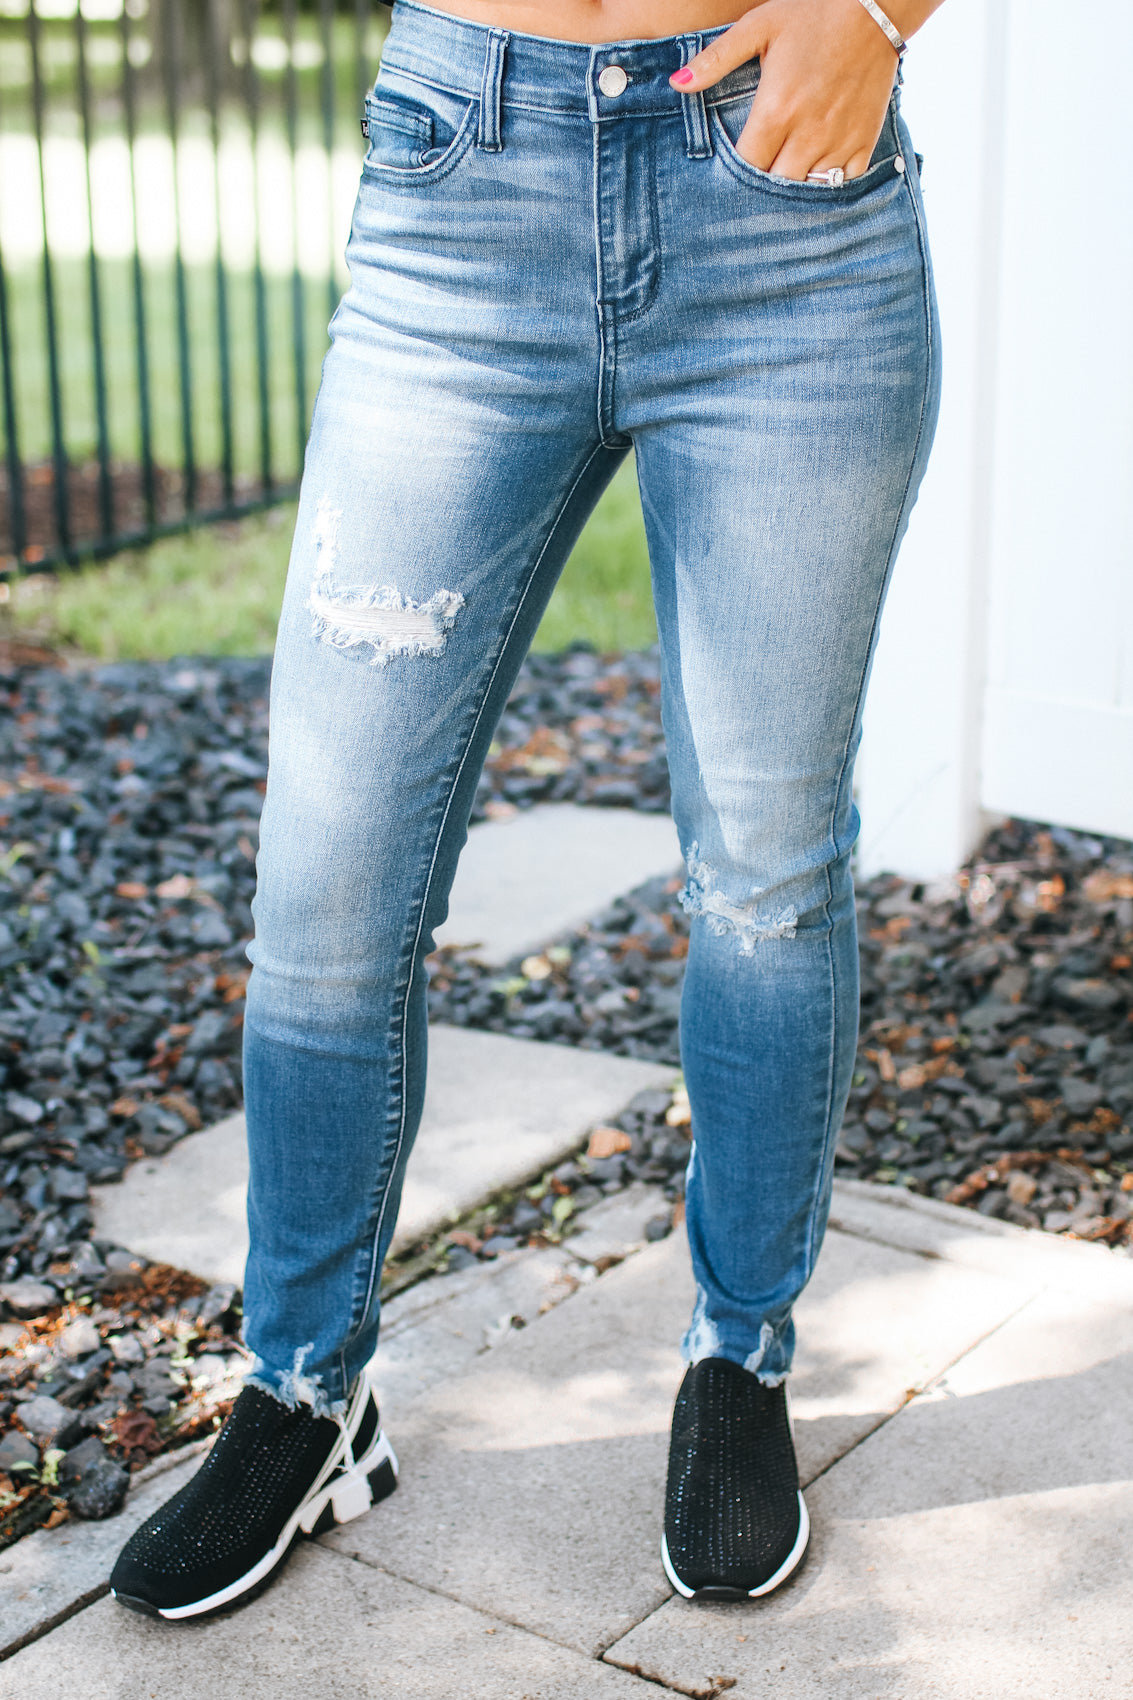 Women's True Shape Jeans, High-Rise Skinny-Leg